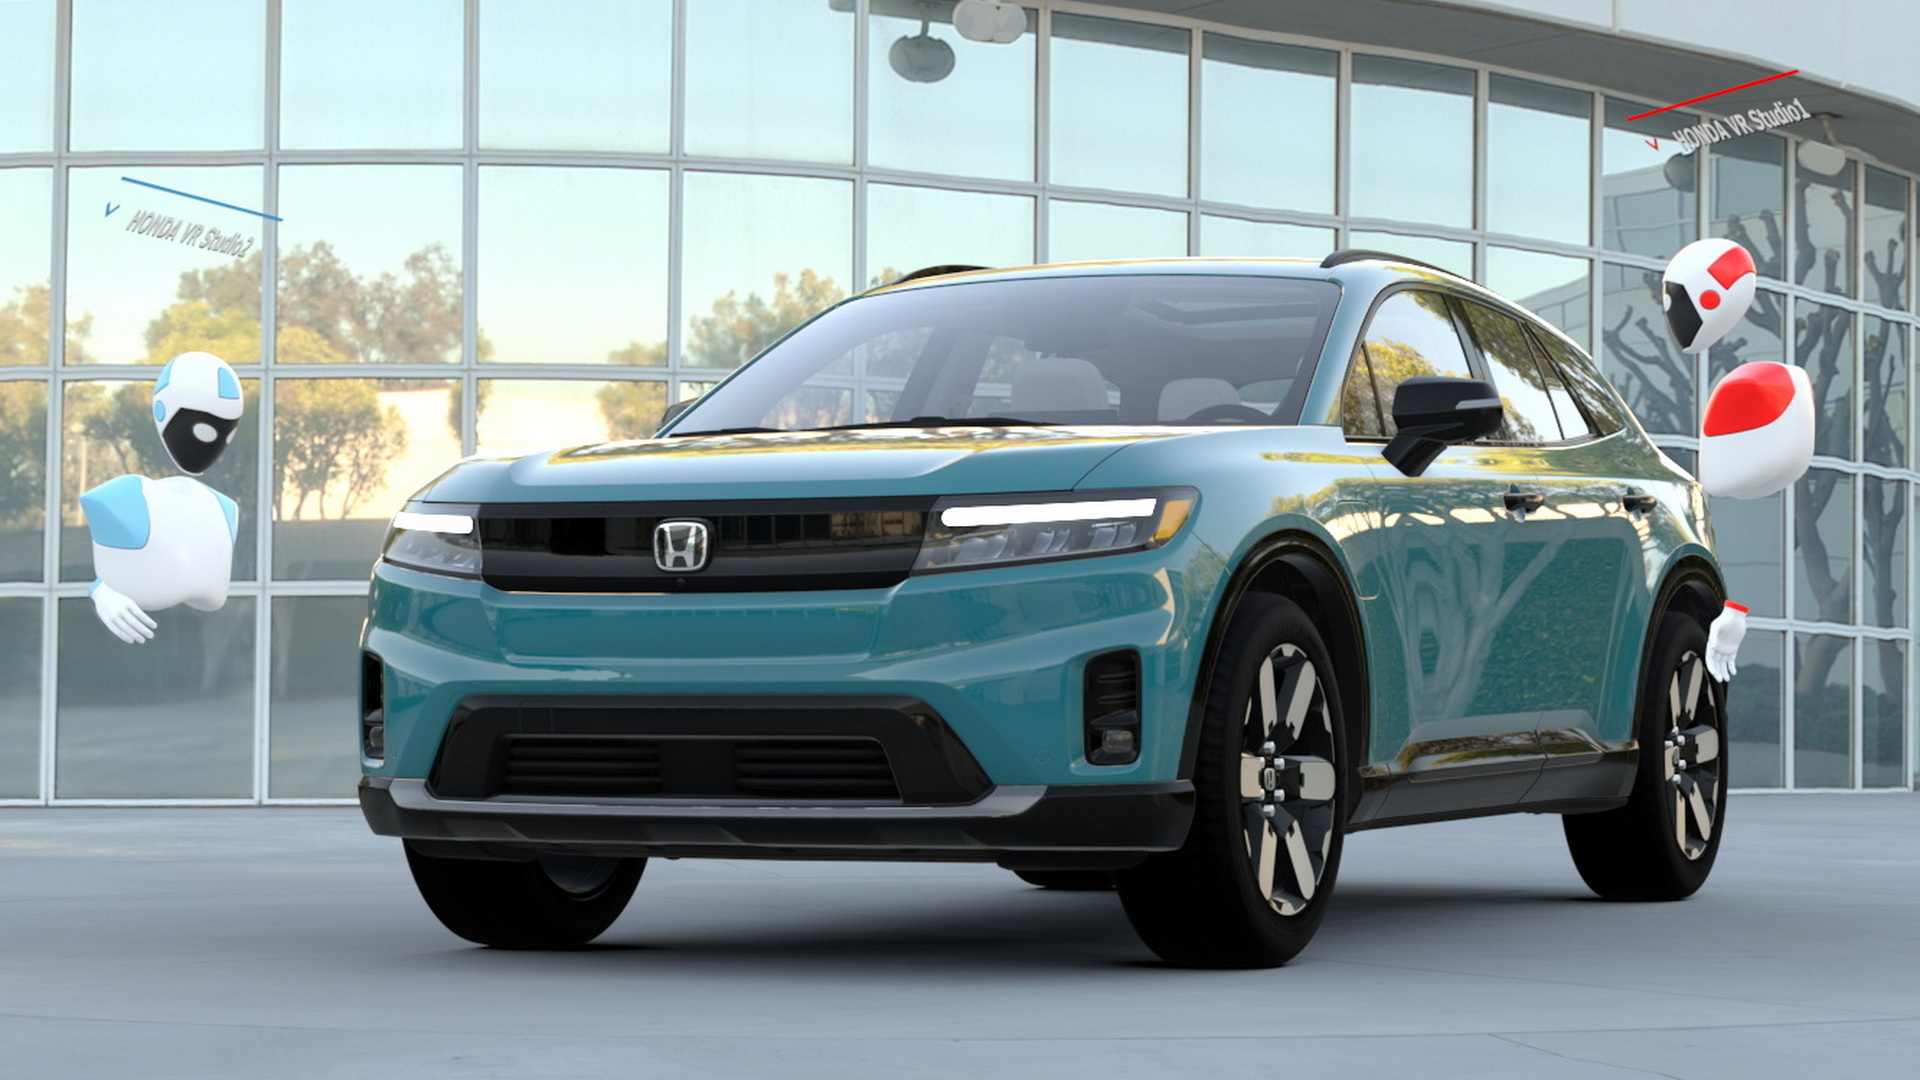 Comment Honda utilise la réalité virtuelle dans la conception de voitures pour développer de nouveaux modèles plus rapidement